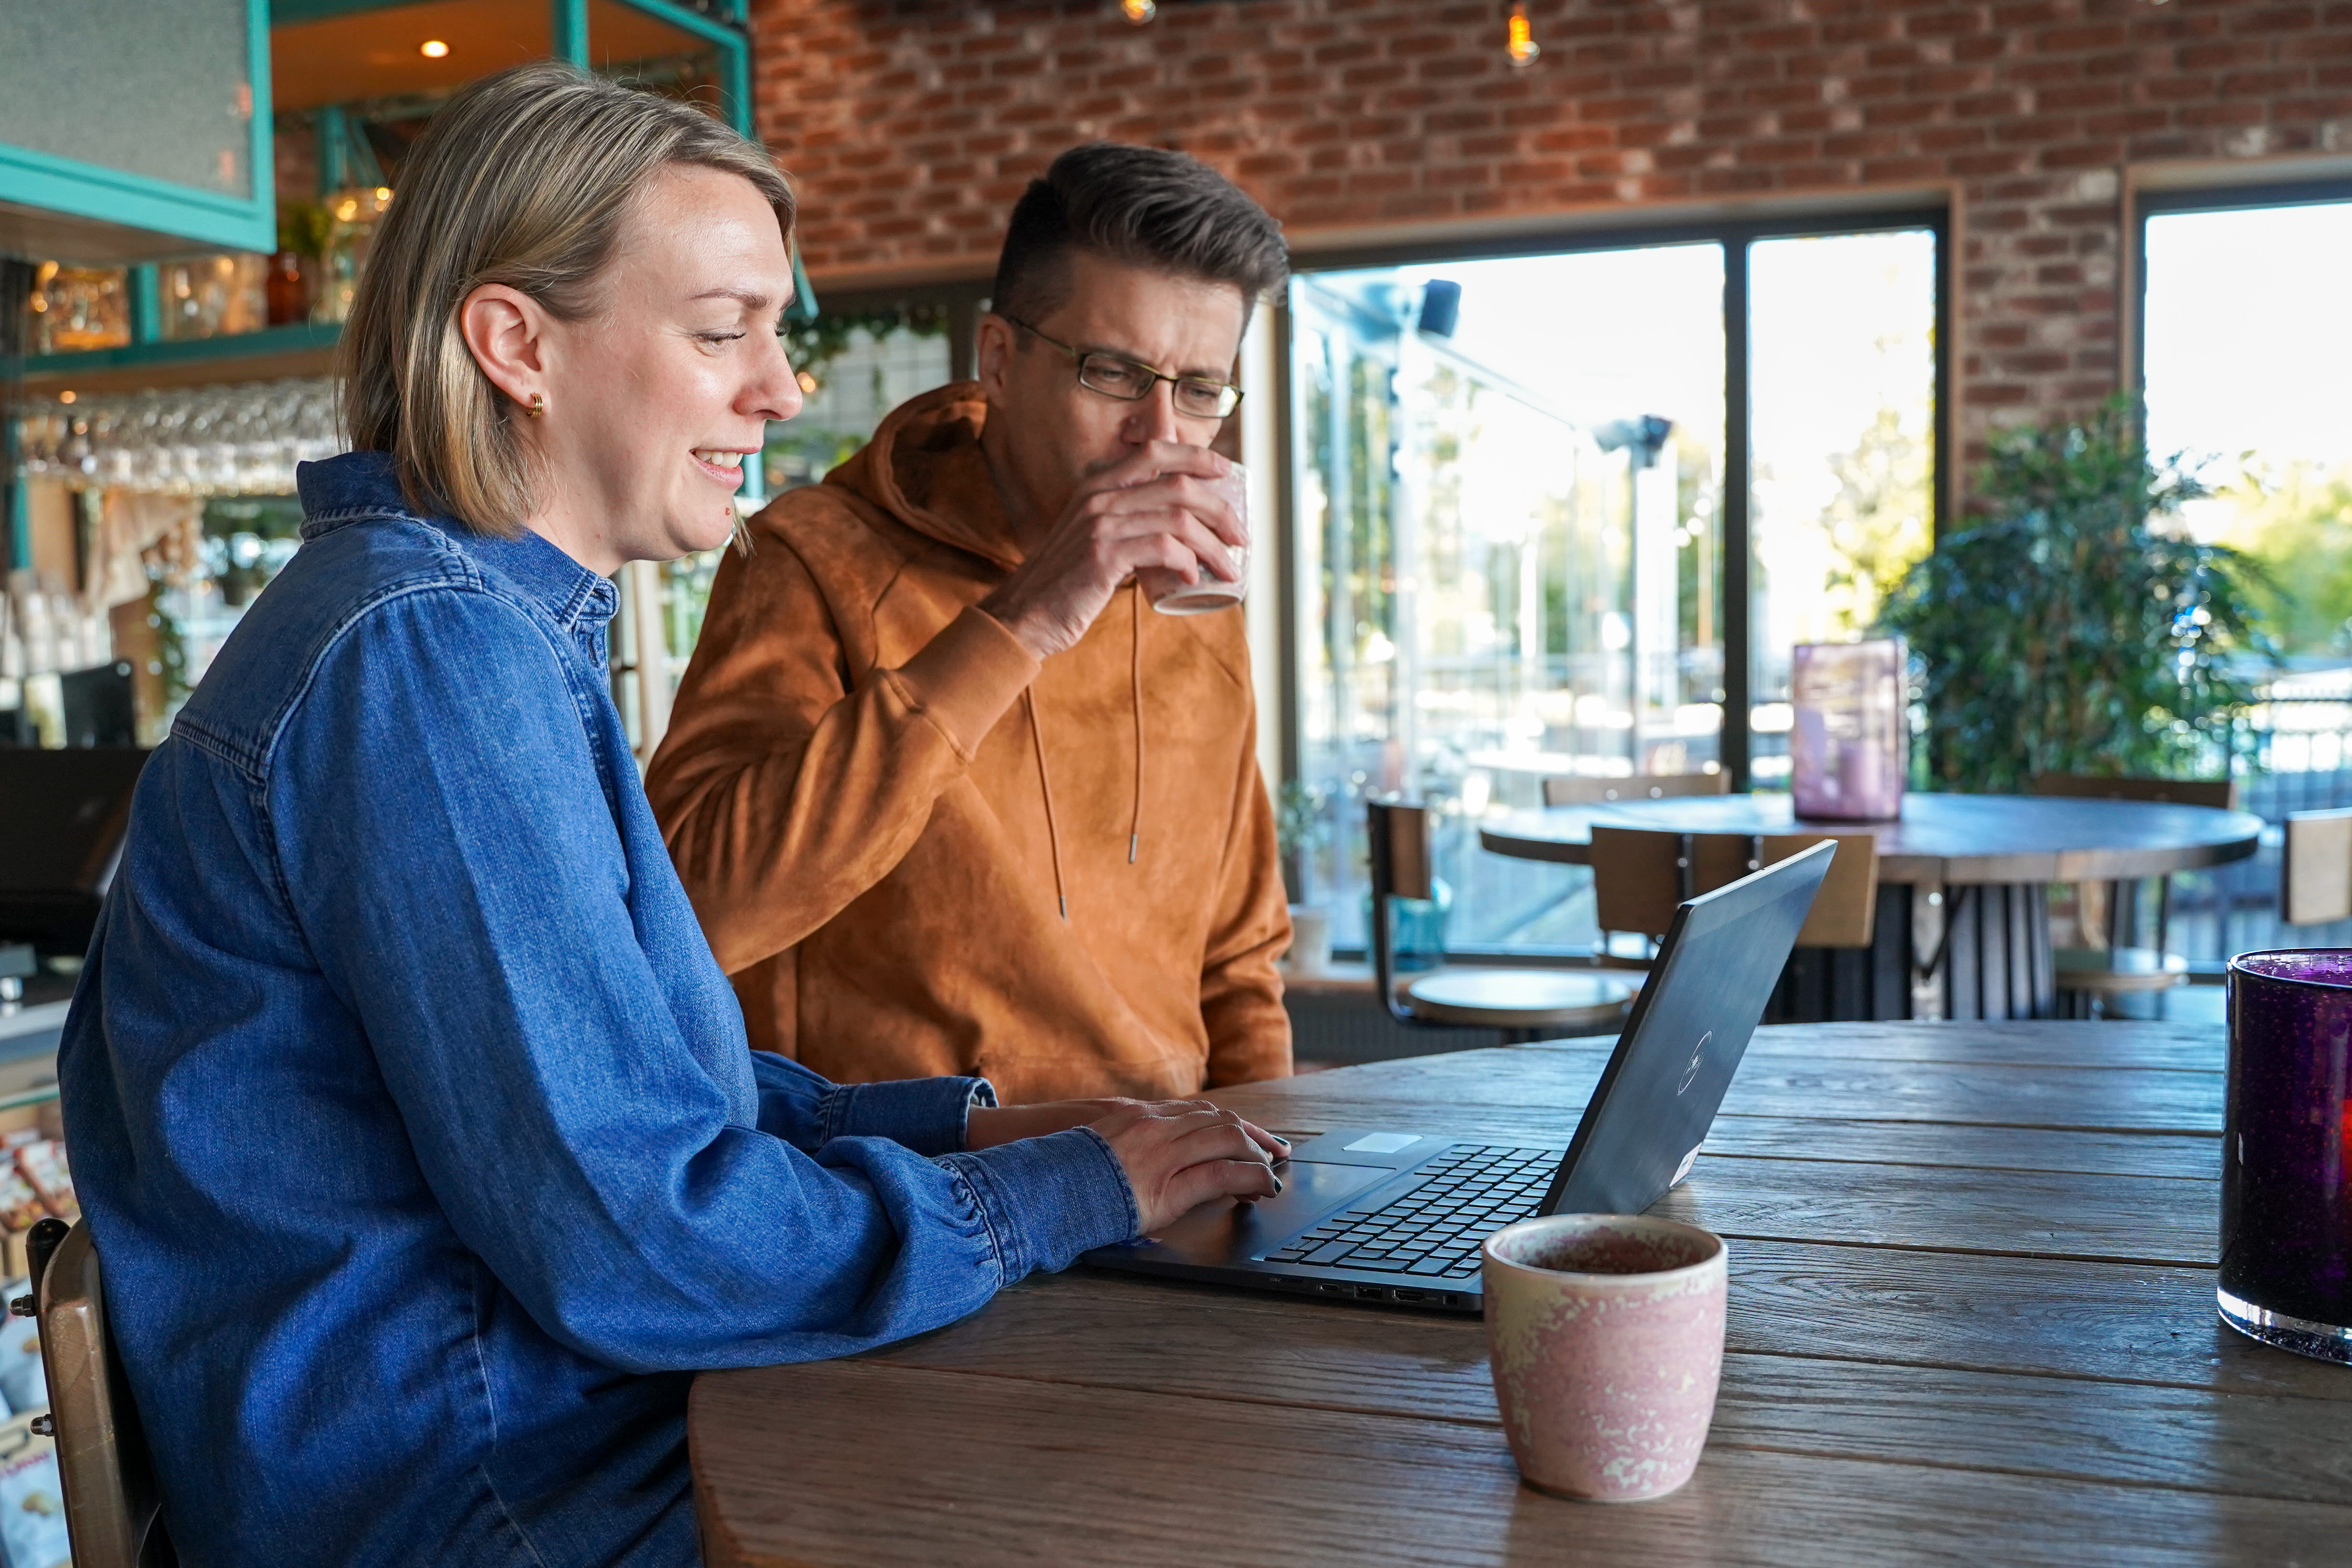 Närbild två personer sitter och tittar på en dator och dricker kaffe på ett fik.